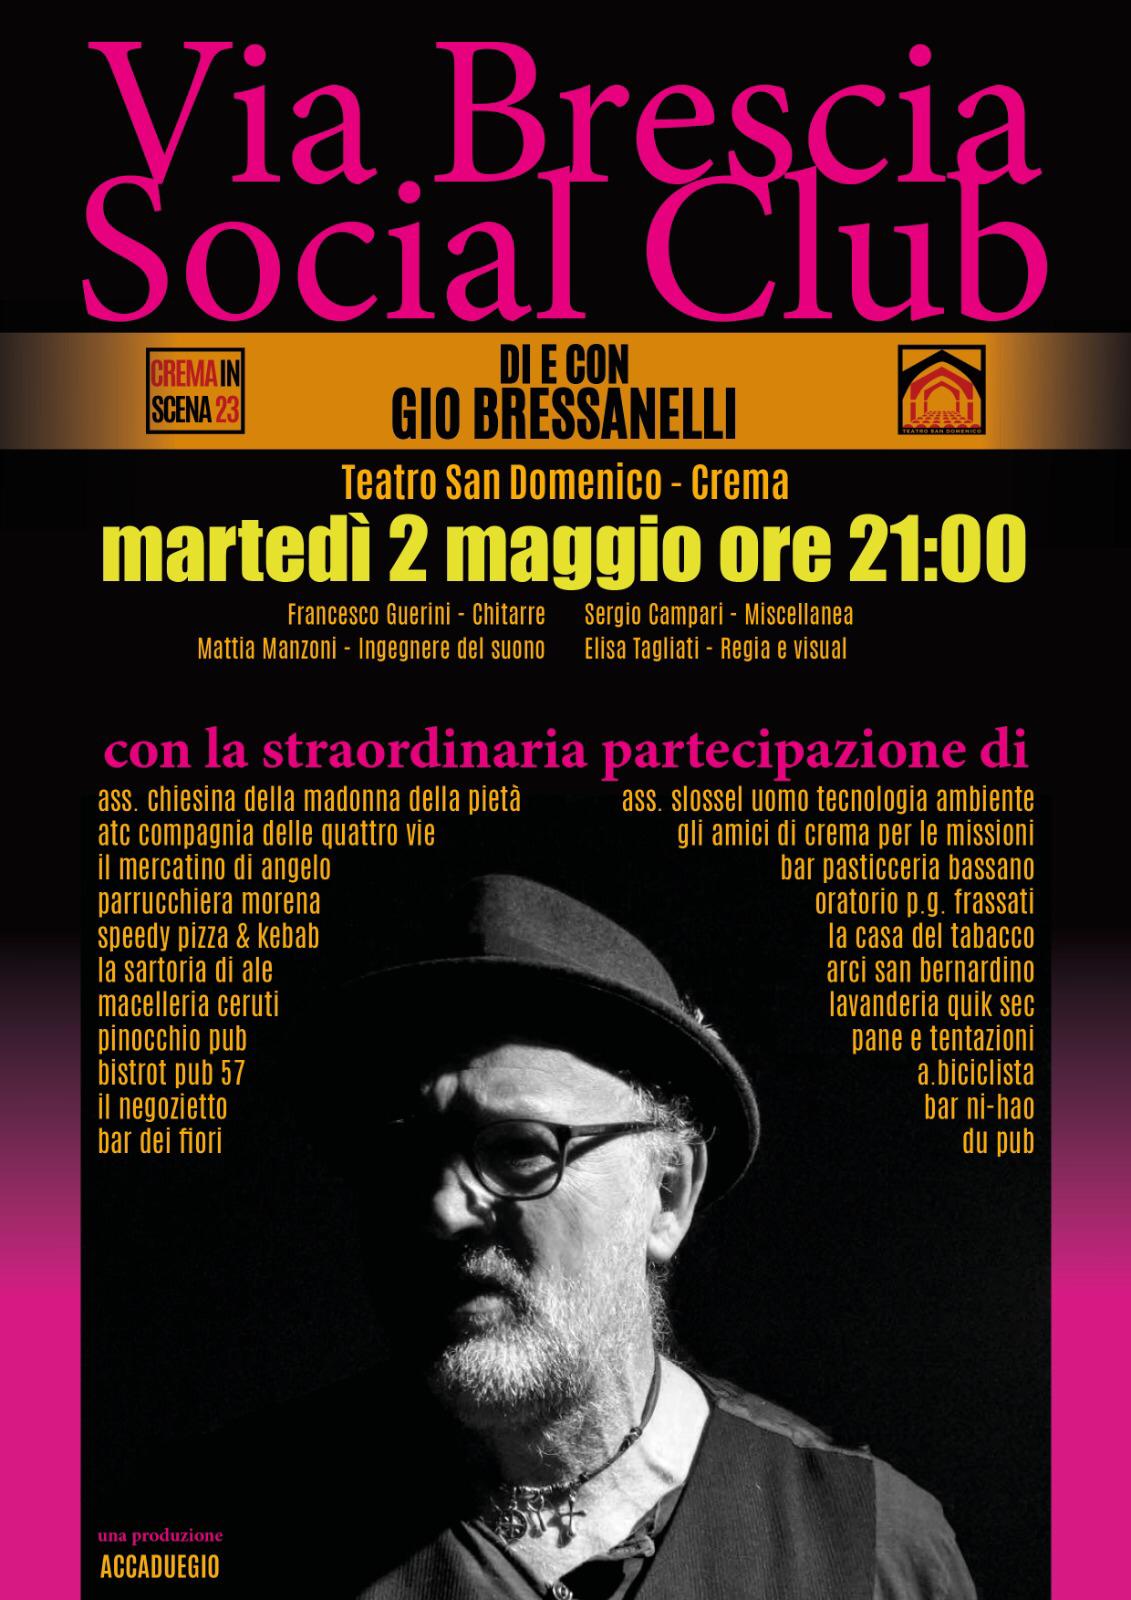 Via Brescia Social Club, il recitalcantando che racconta il territorio di Gio Bressanelli